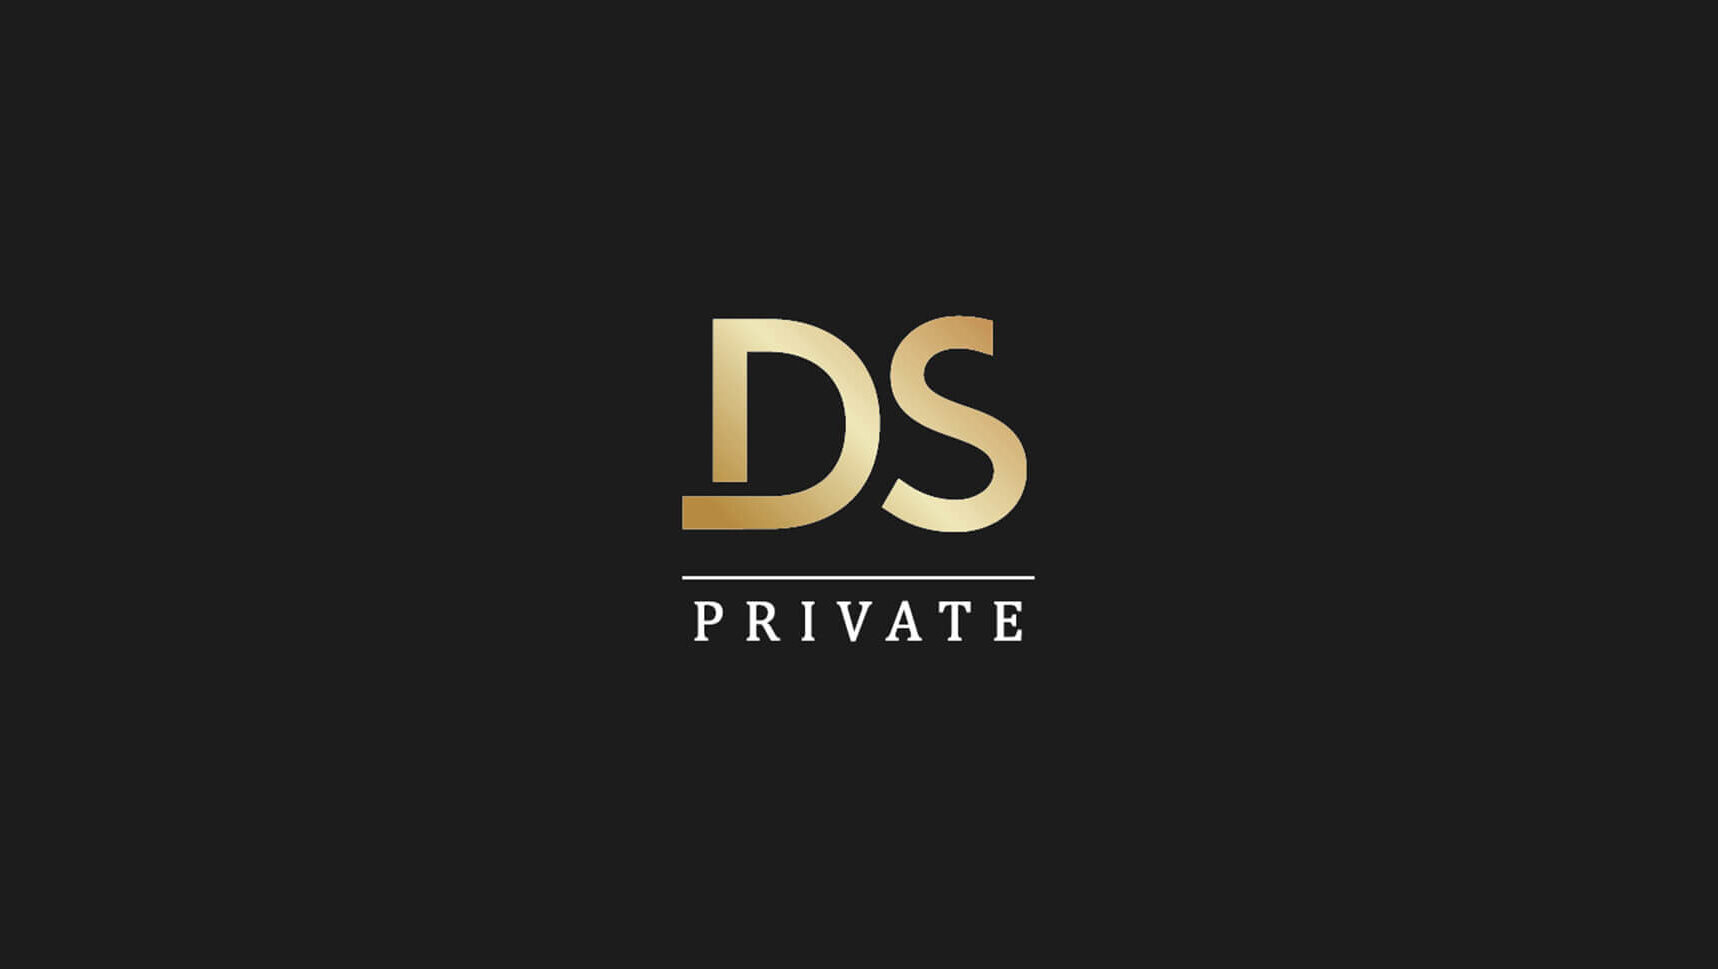 DS PRIVATE